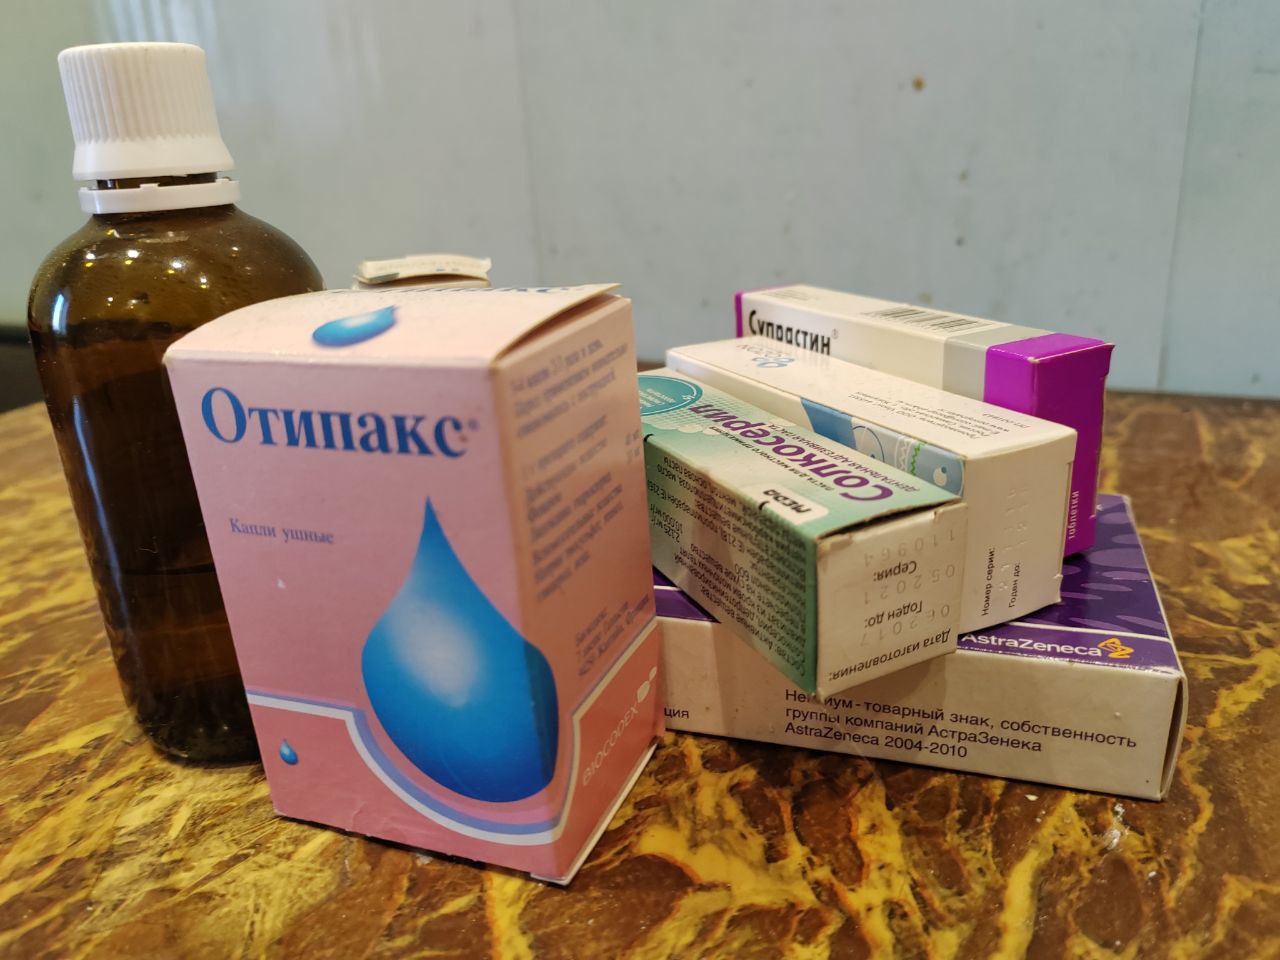 Фото В Бурятии владелец аптеки занимался нелегальной торговлей лекарствами